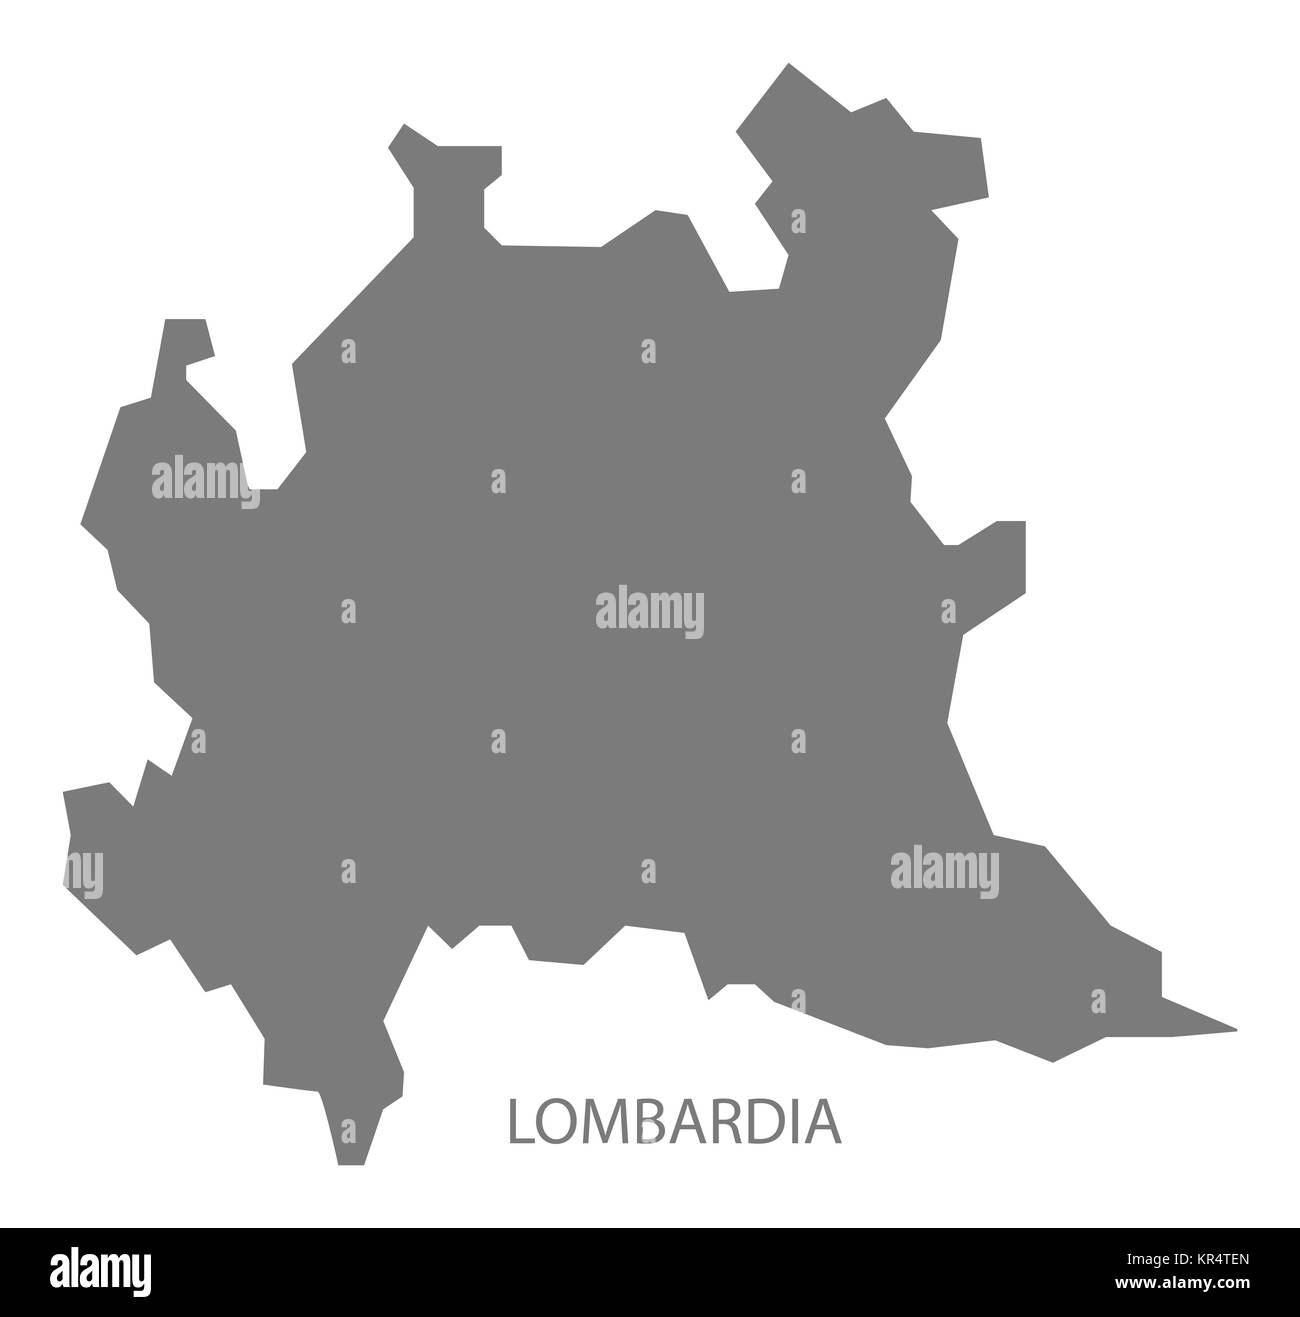 Lombardia Italy Map grey Stock Photo